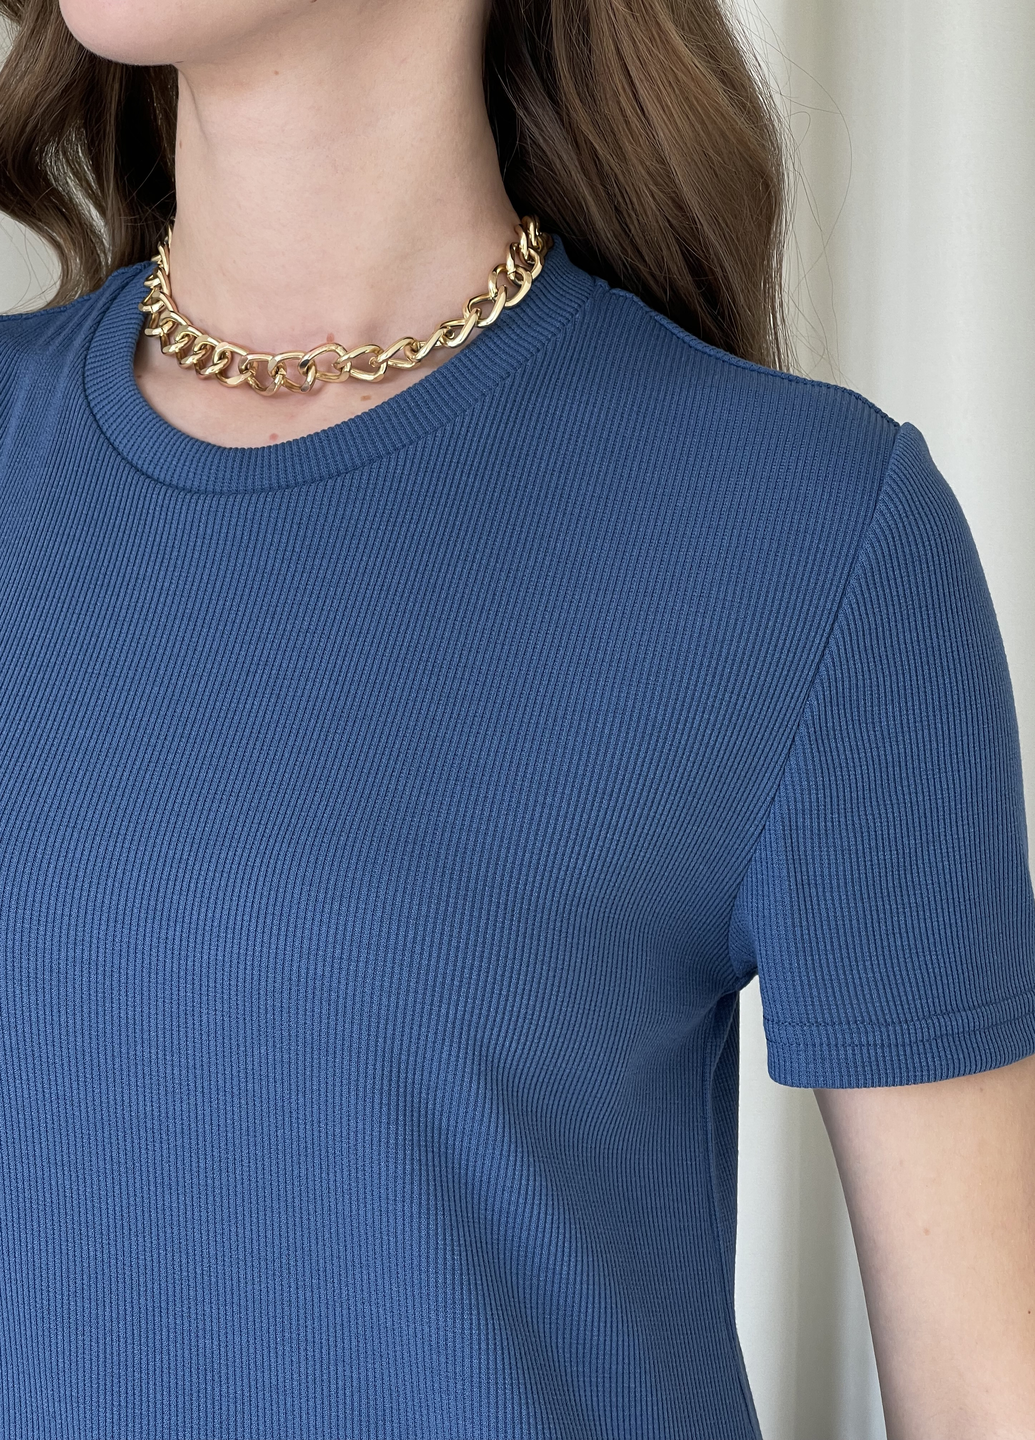 Купить Длинное платье-футболка в рубчик синее Merlini Кассо 700000131 размер 42-44 (S-M) в интернет-магазине